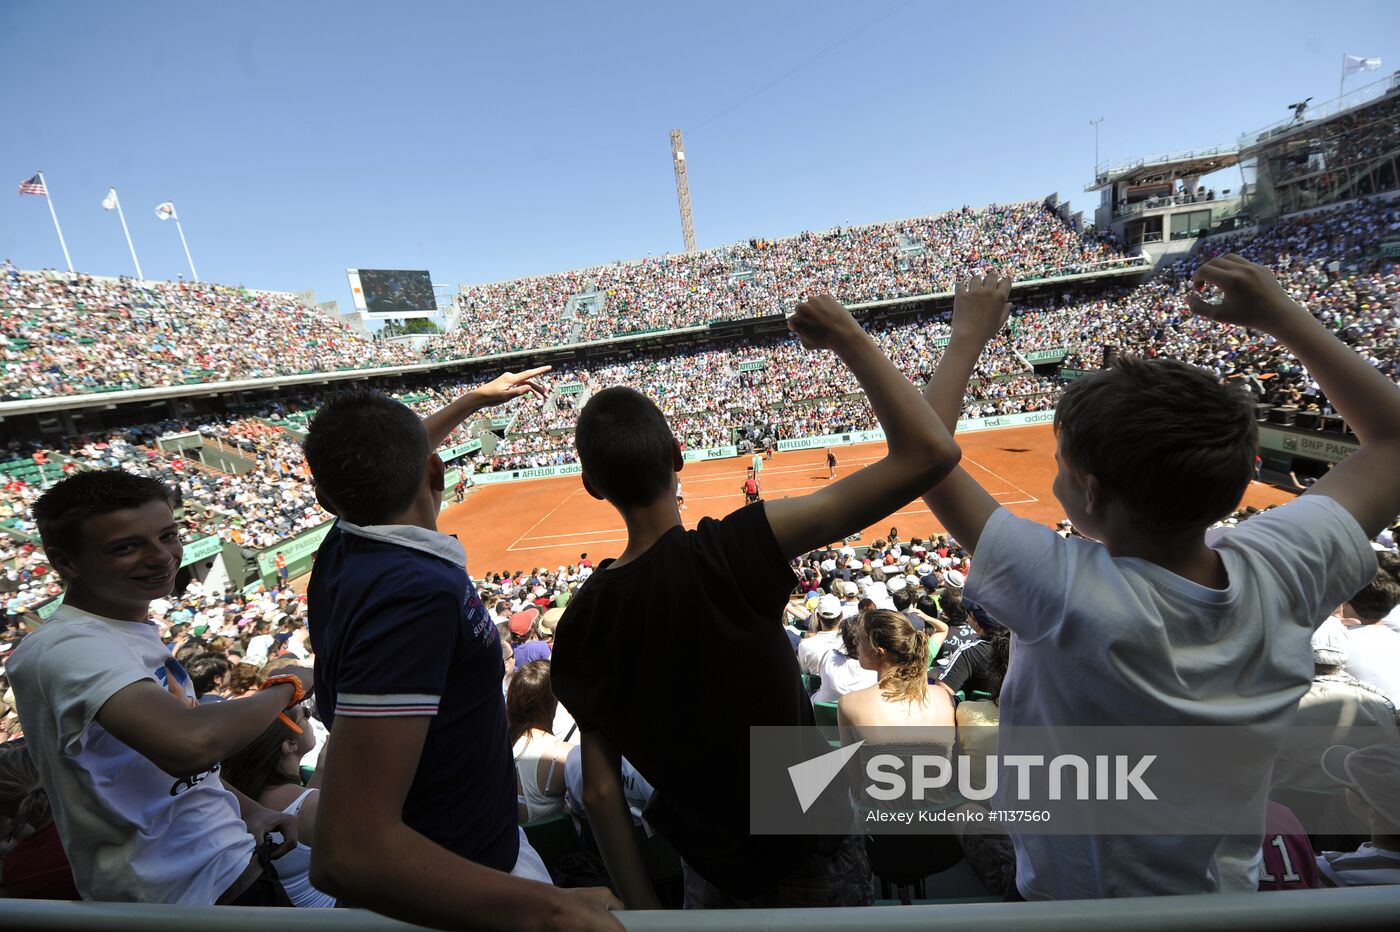 Roland Garros 2012. Children's Day